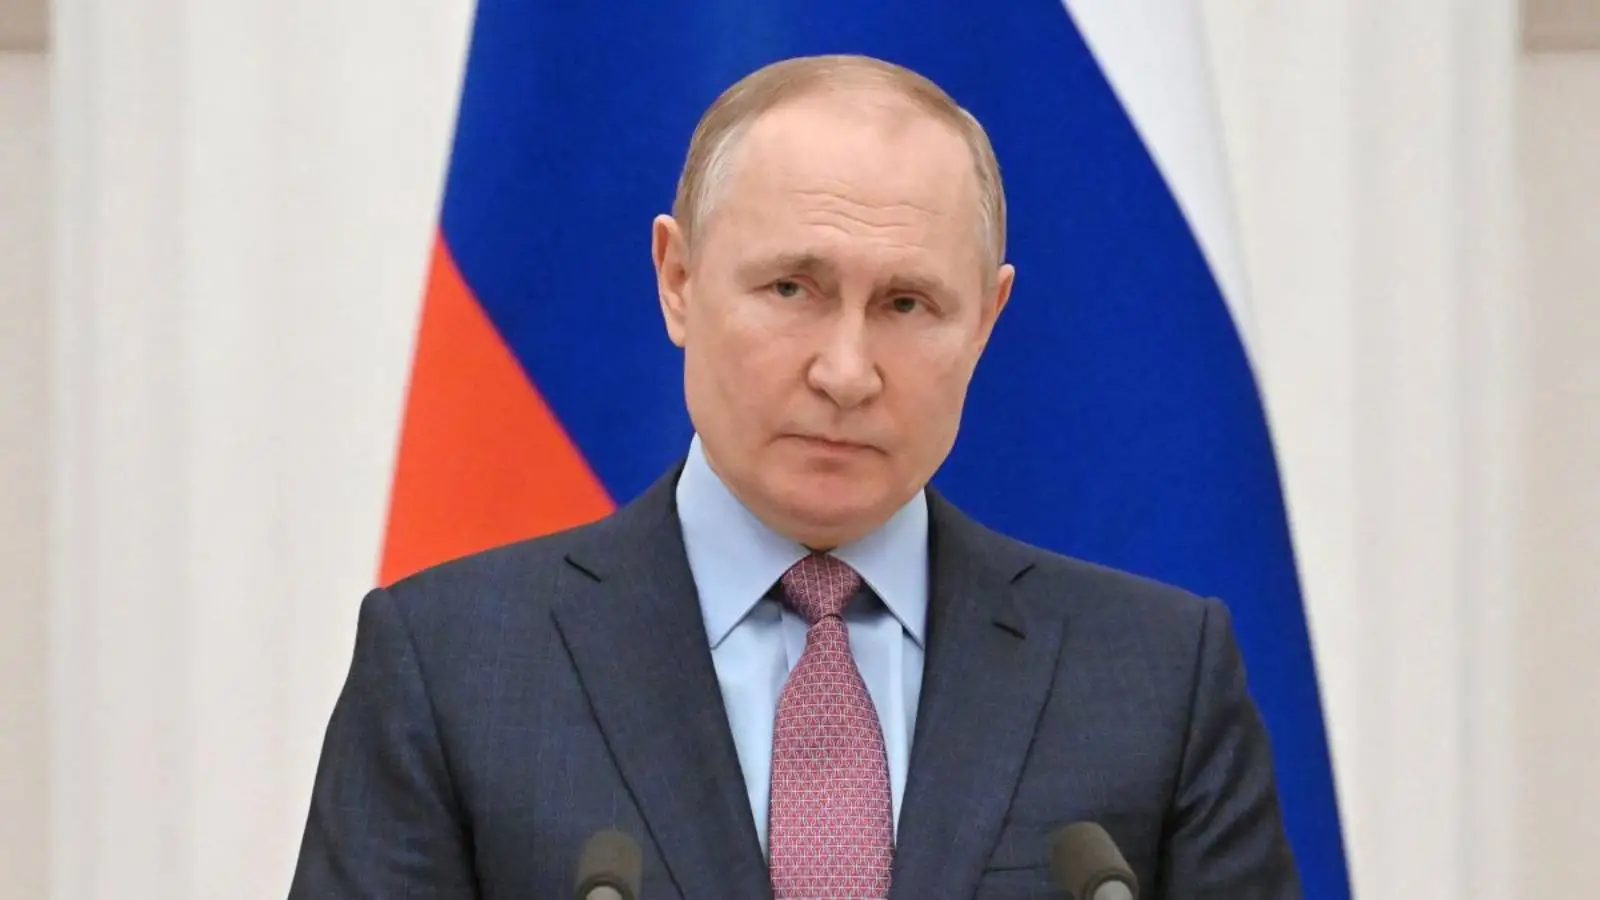 Quante persone ha mobilitato la Russia dopo l'annuncio di Putin che ha spaventato i russi?